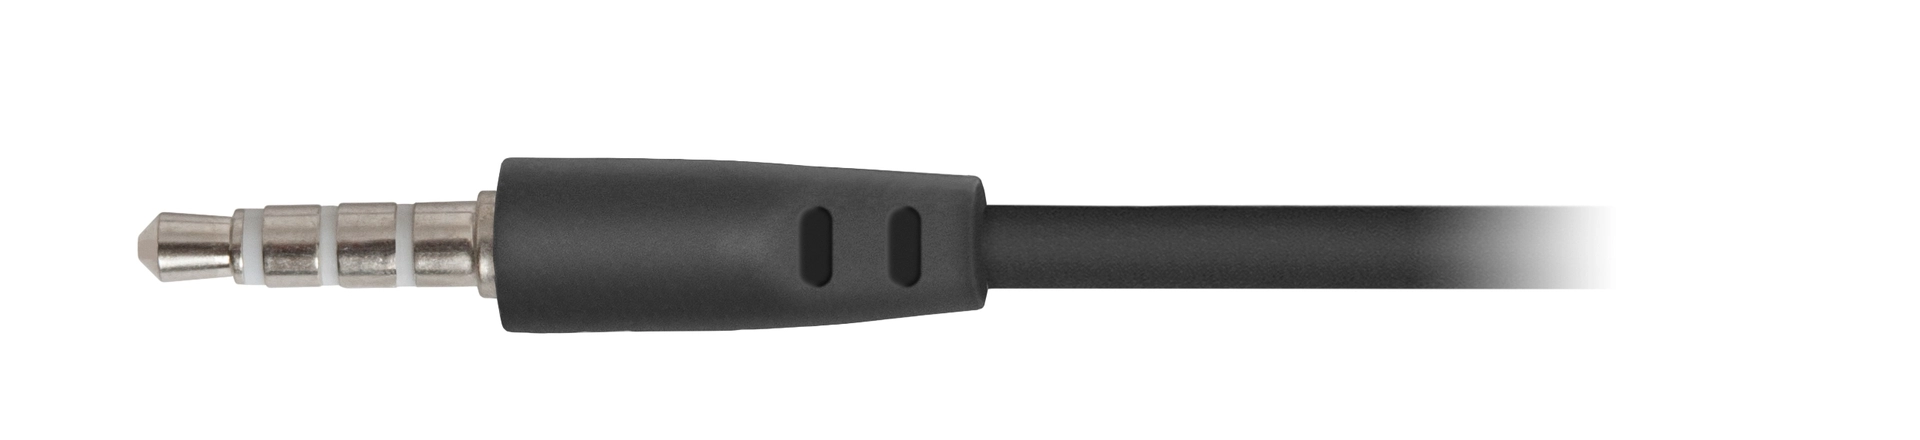 Наушники проводные DEFENDER Pulse 420 black/blue (63423)